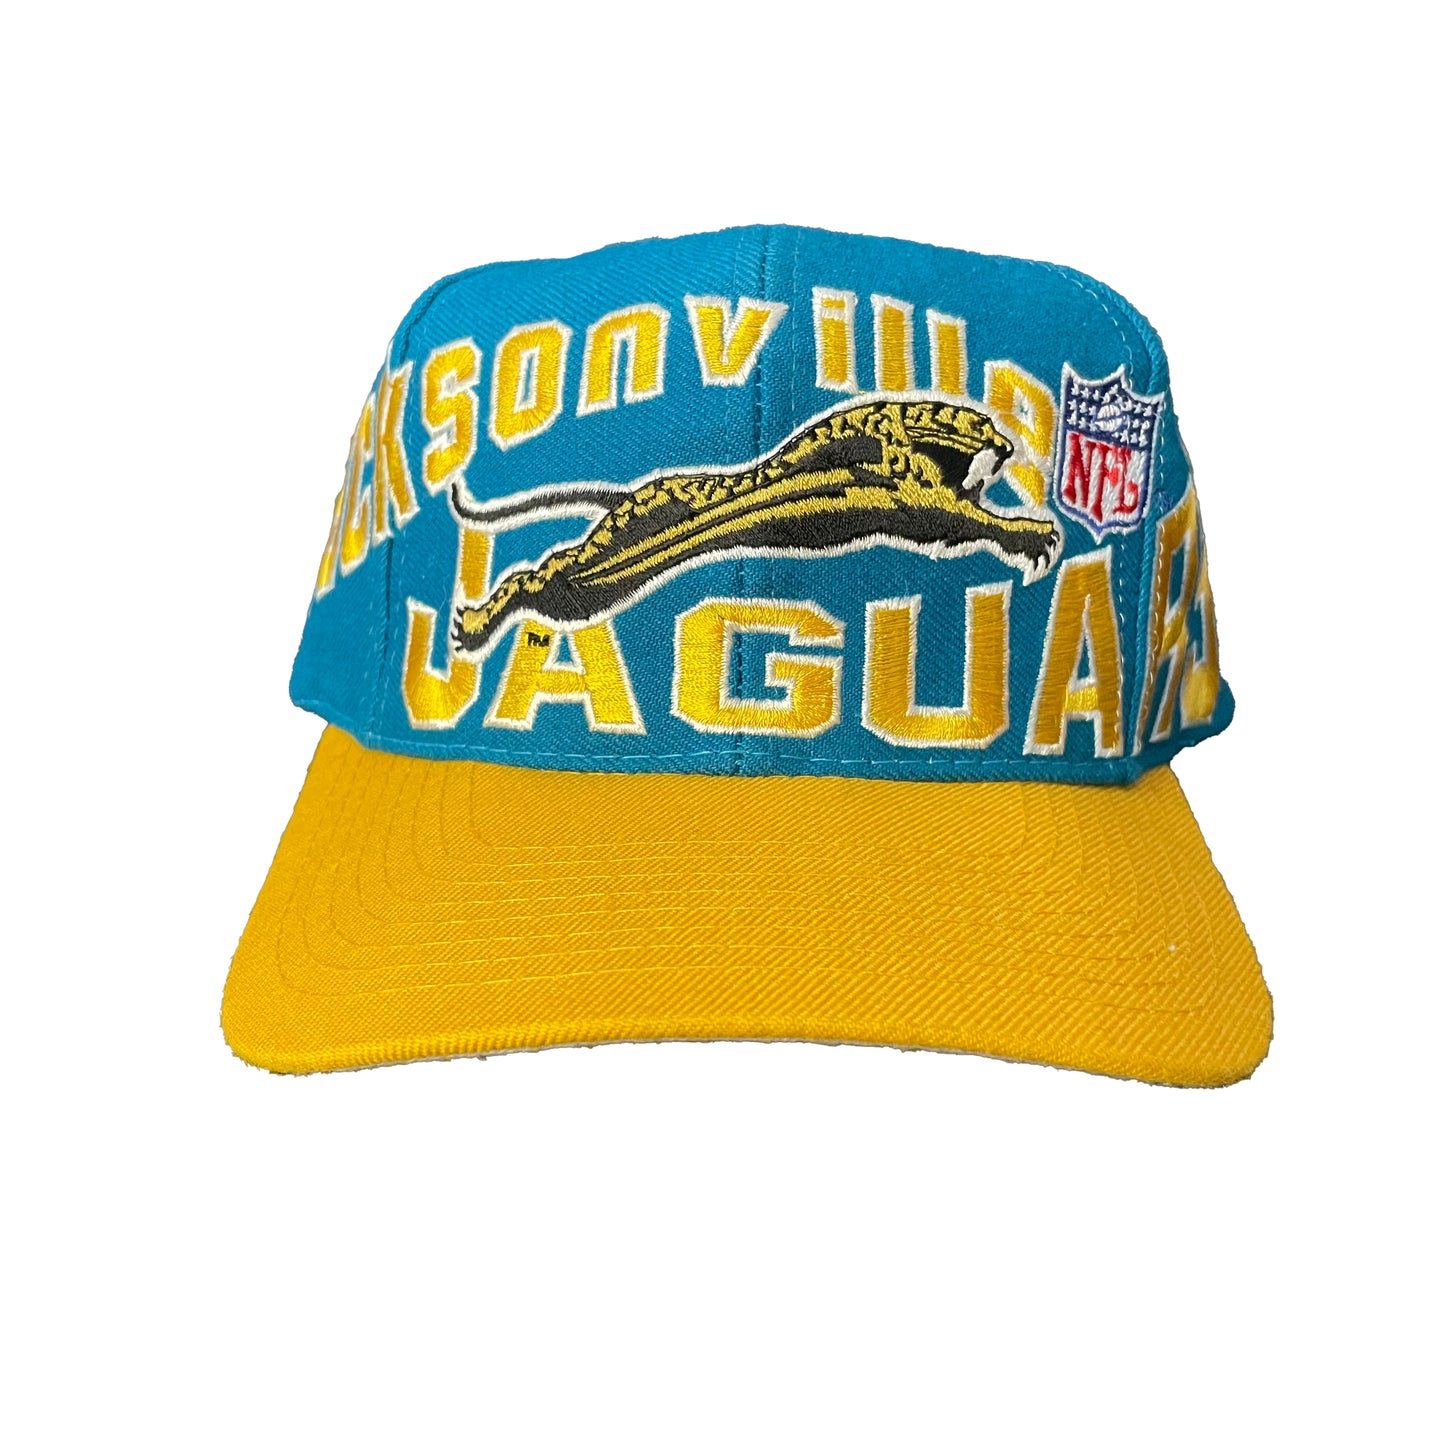 Jacksonville Jaguars APEX banned logo hat